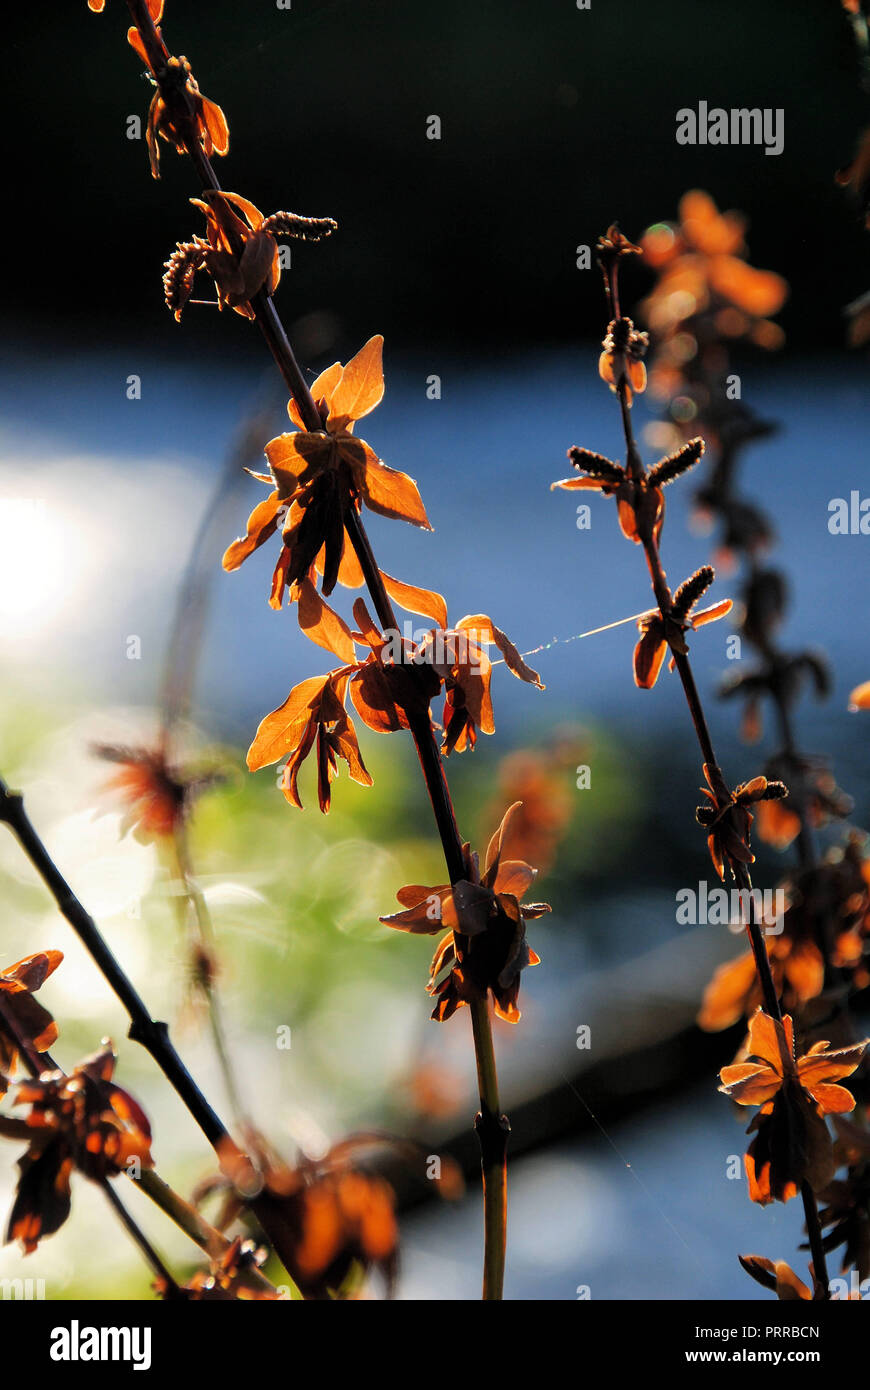 Un groupe de morts marron/orange et sécher les fleurs et les feuilles sur les tiges, illuminée par le soleil d'automne, au Québec, Canada Banque D'Images